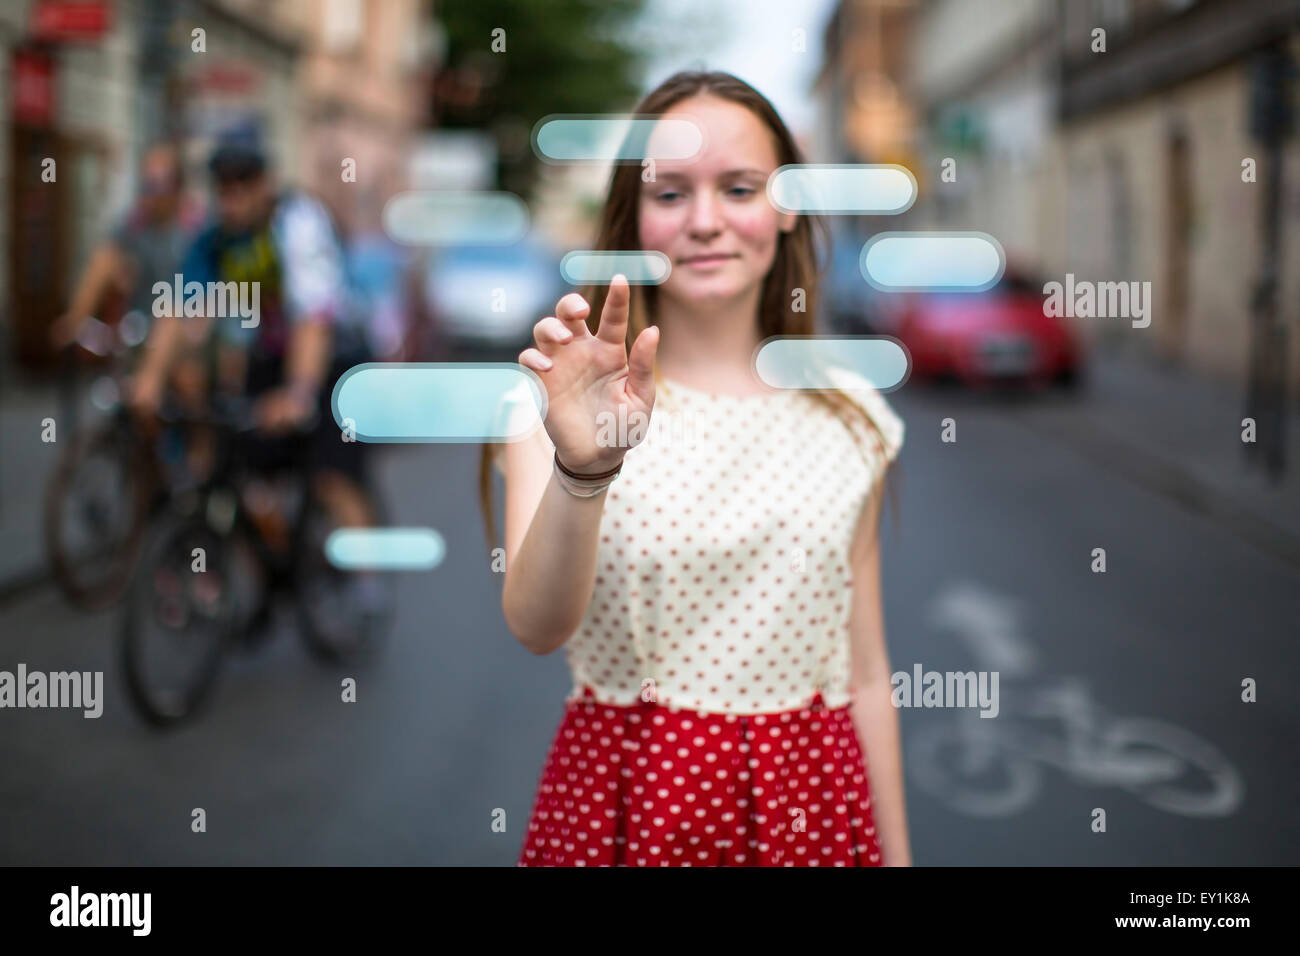 Junge süße Teen Girl auf der Straße drückt einen imaginären Knopf in der Luft. Tasten mit Platz für Ihren Text. Stockfoto